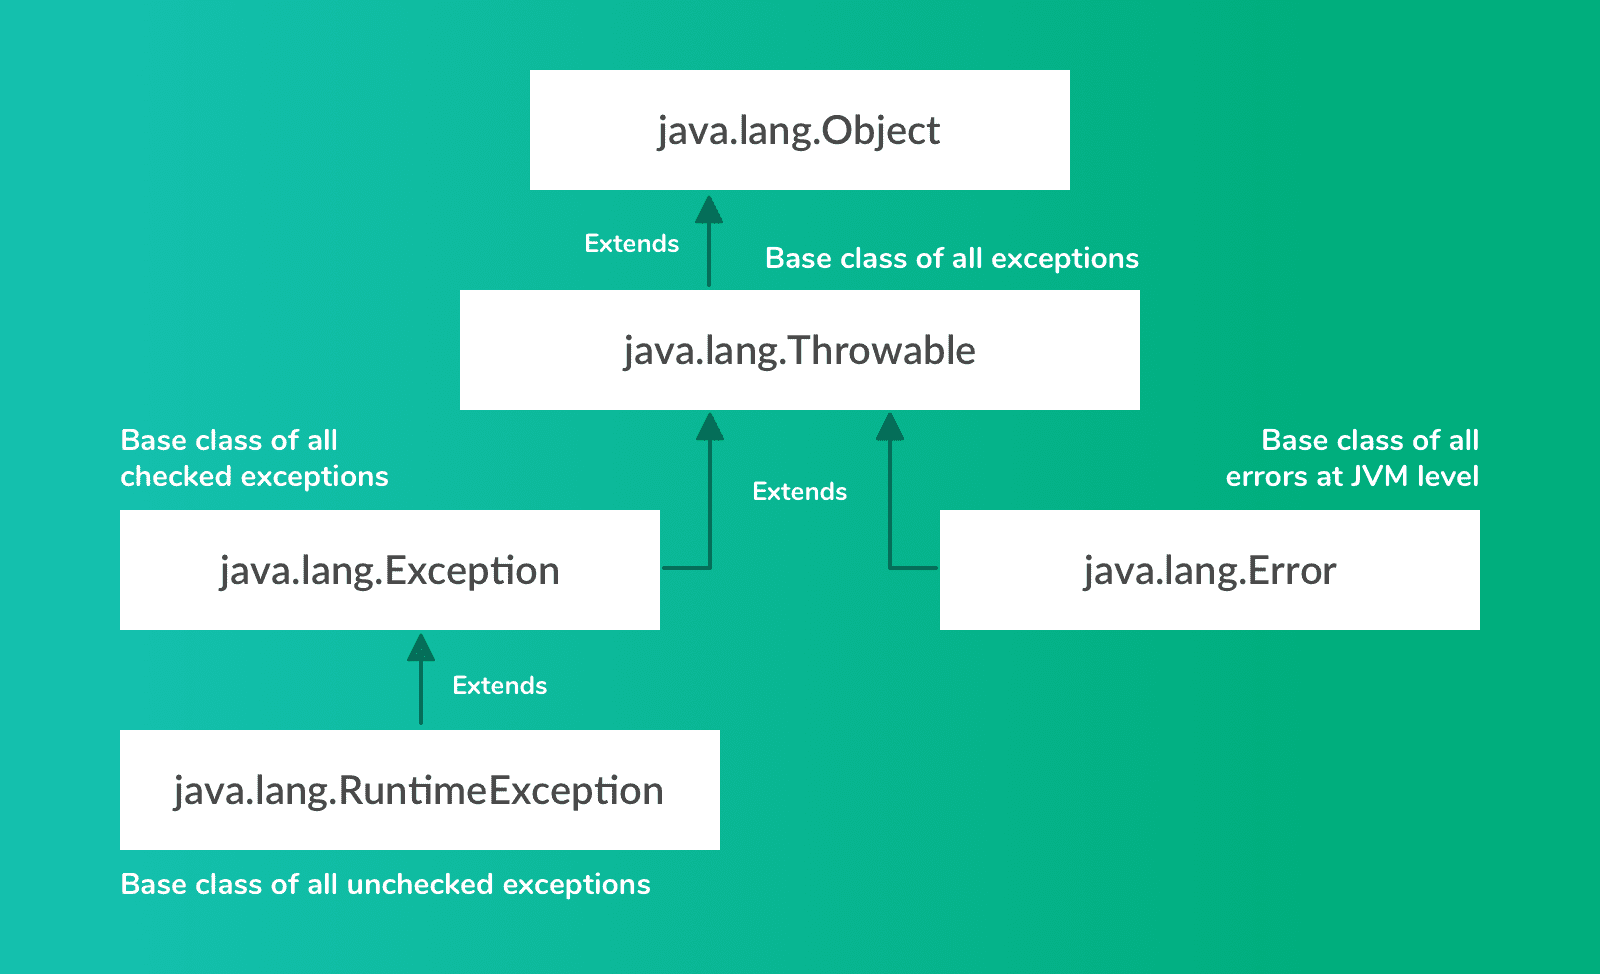 最新的Java常见面试题和答案合集介绍